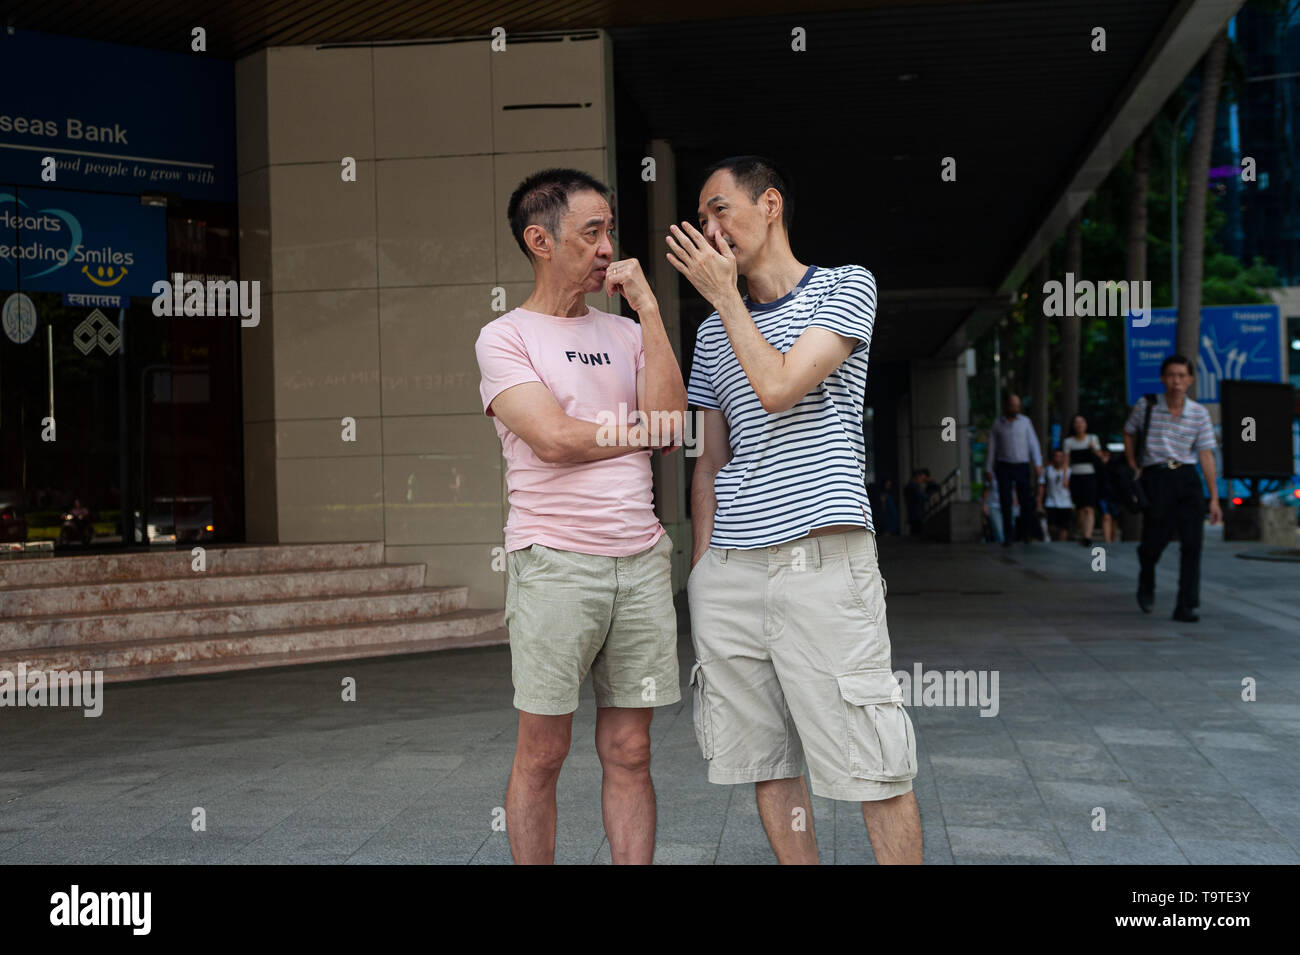 09.05.2019, Singapore, Repubblica di Singapore, in Asia - due uomini sono in chat in quanto essi sono in attesa ad un semaforo nel quartiere centrale degli affari. Foto Stock